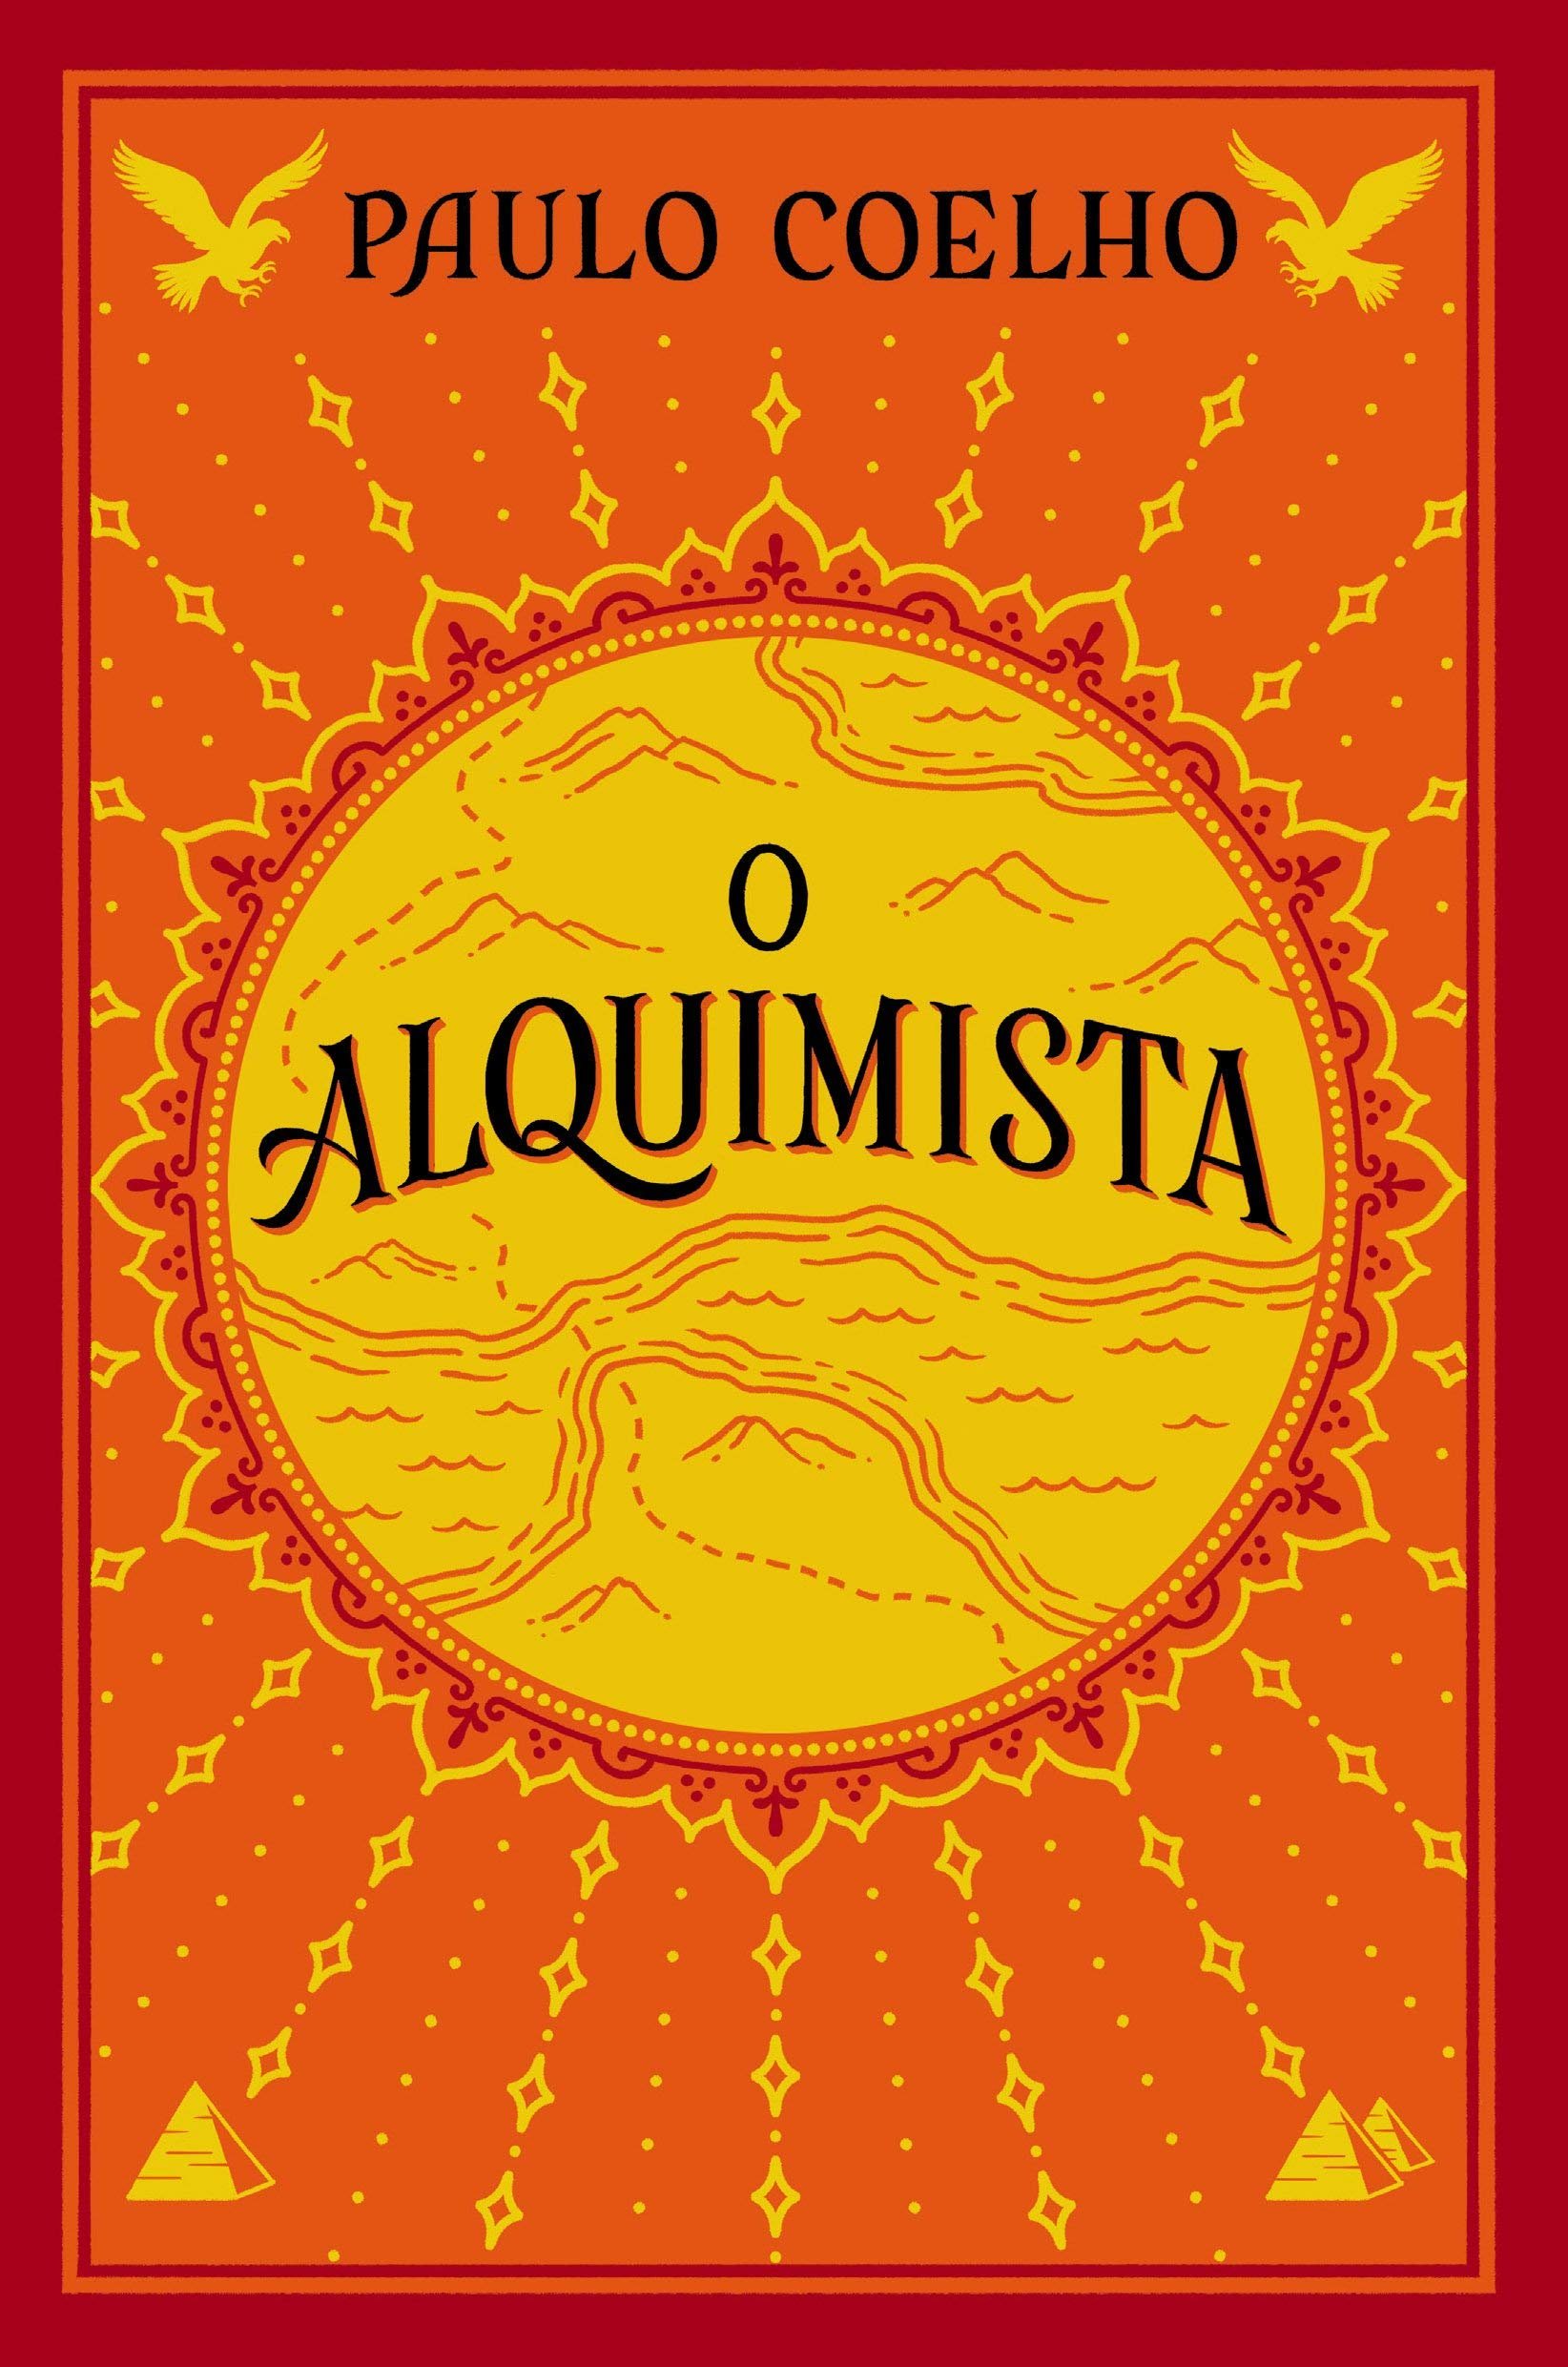 Capa do livro 'O Alquimista'.